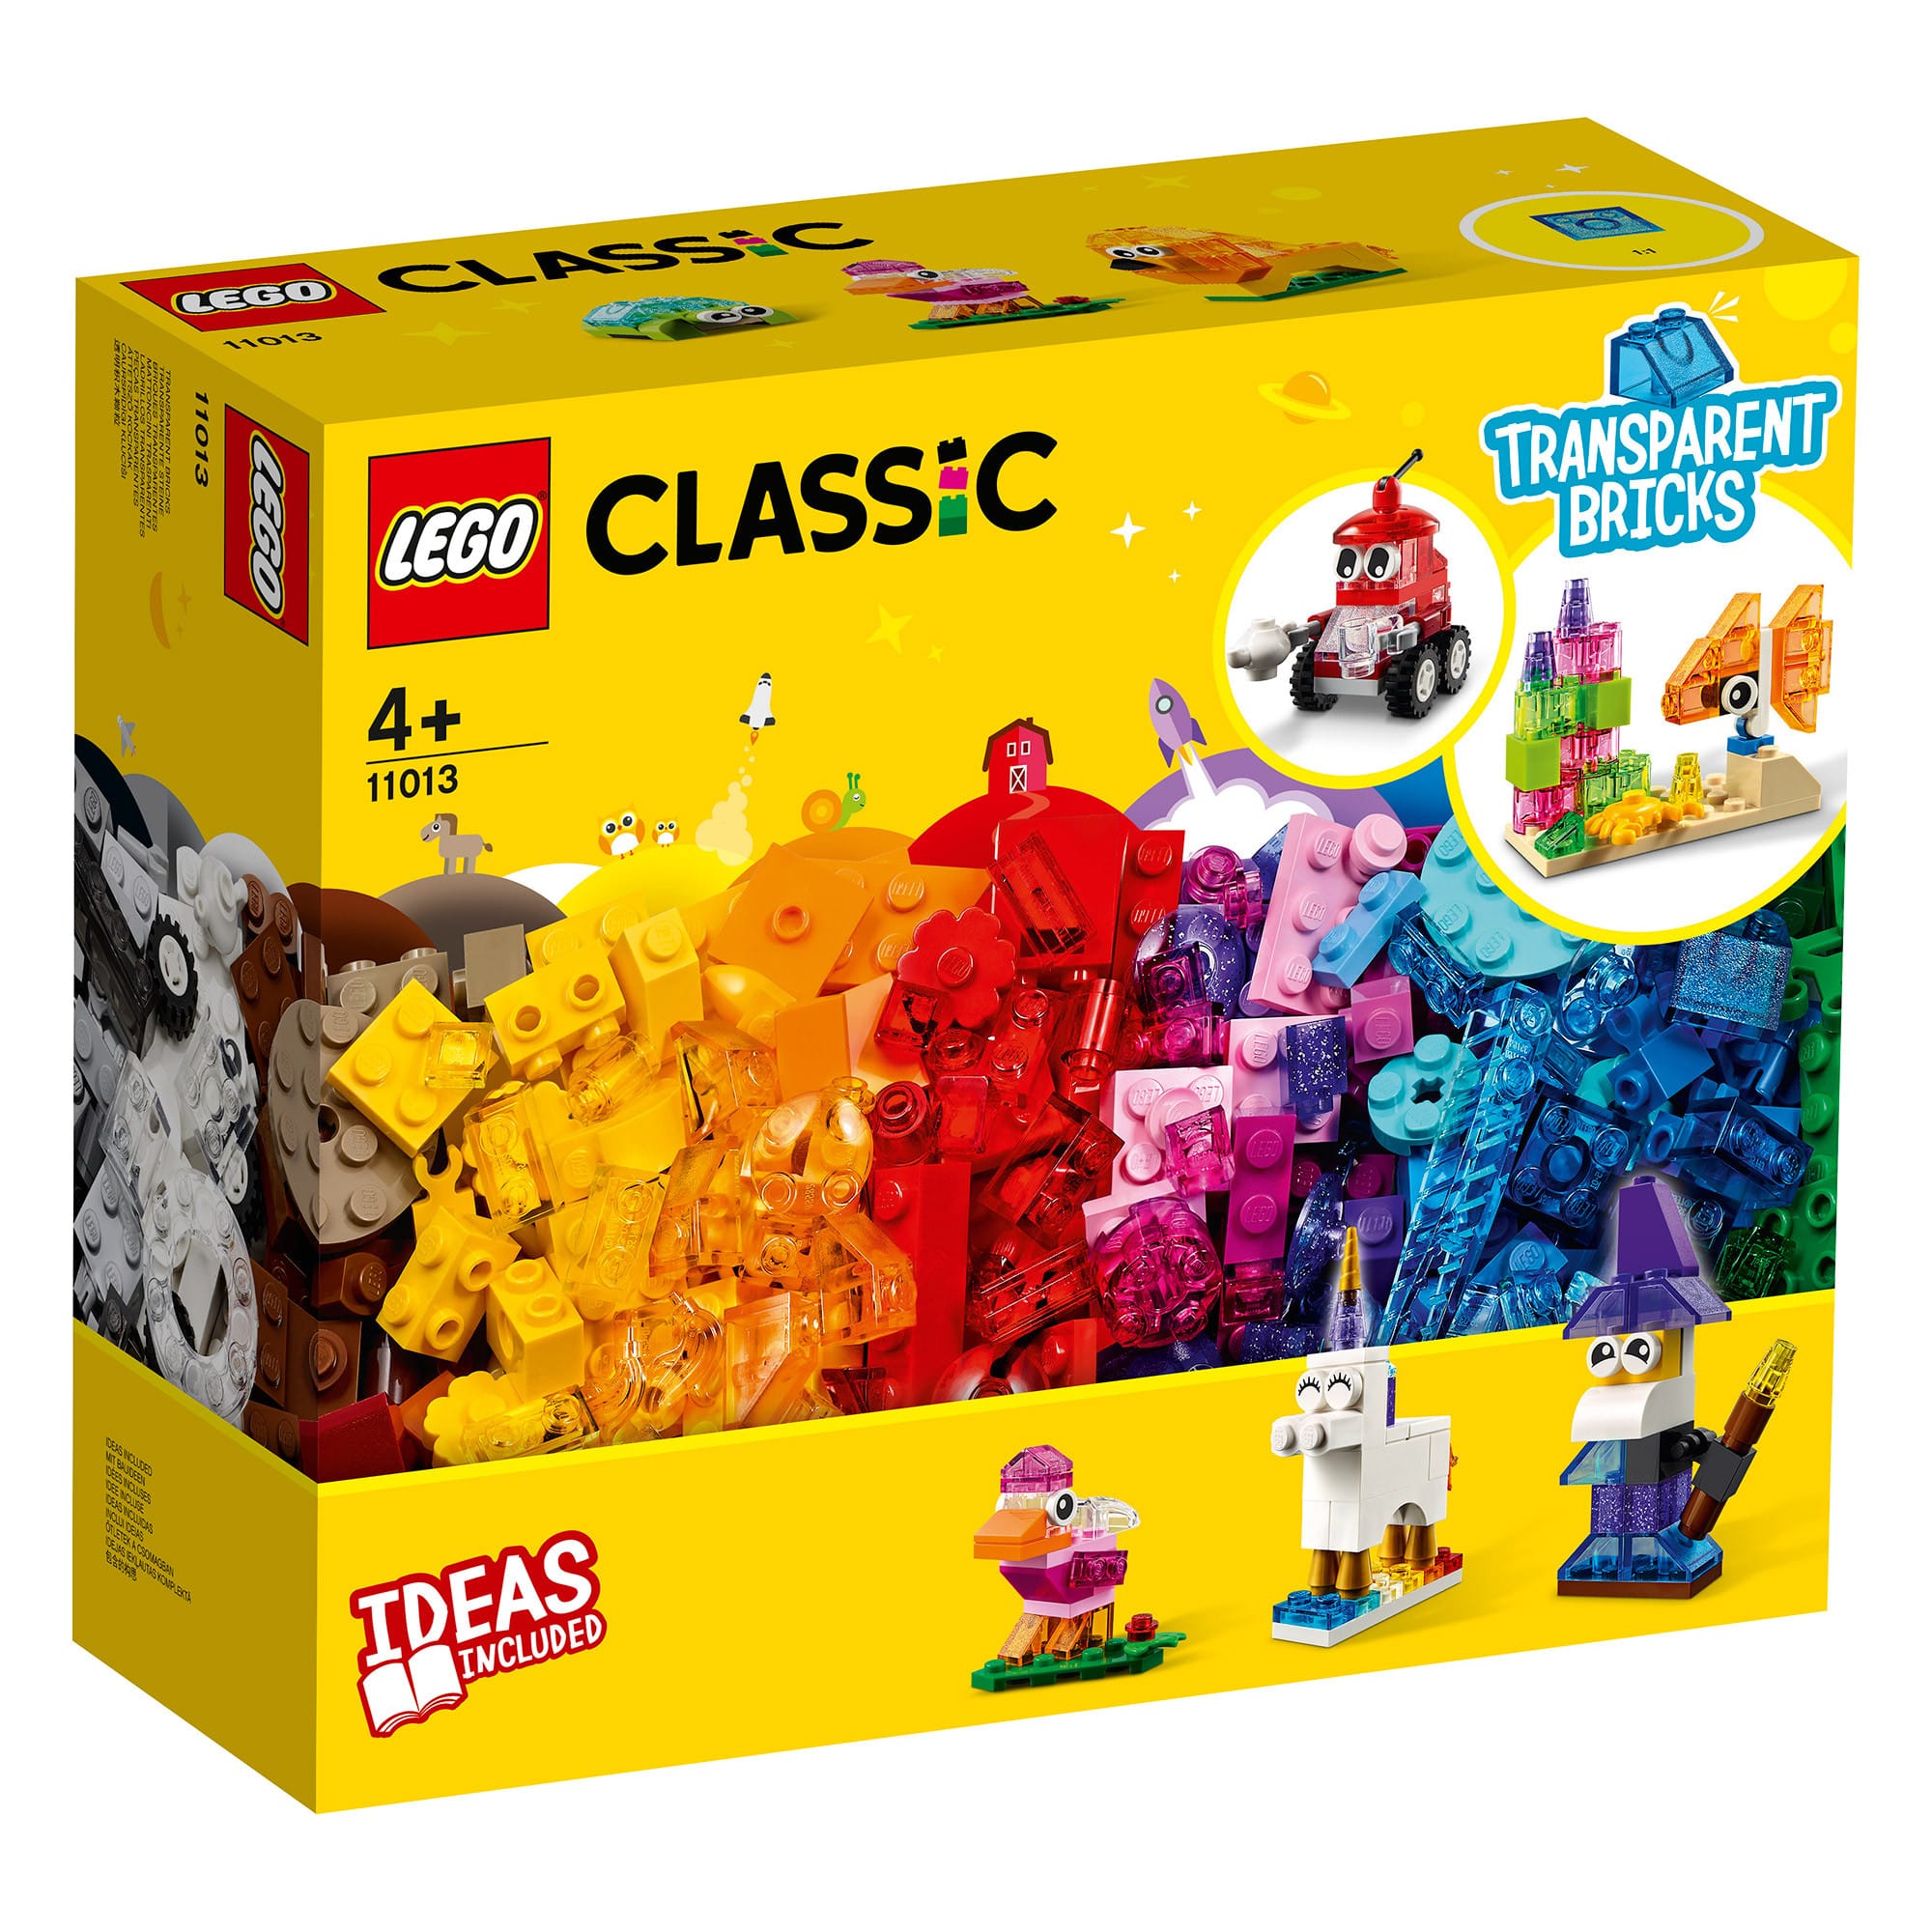 LEGO Classic 11013 - Transparent Bricks